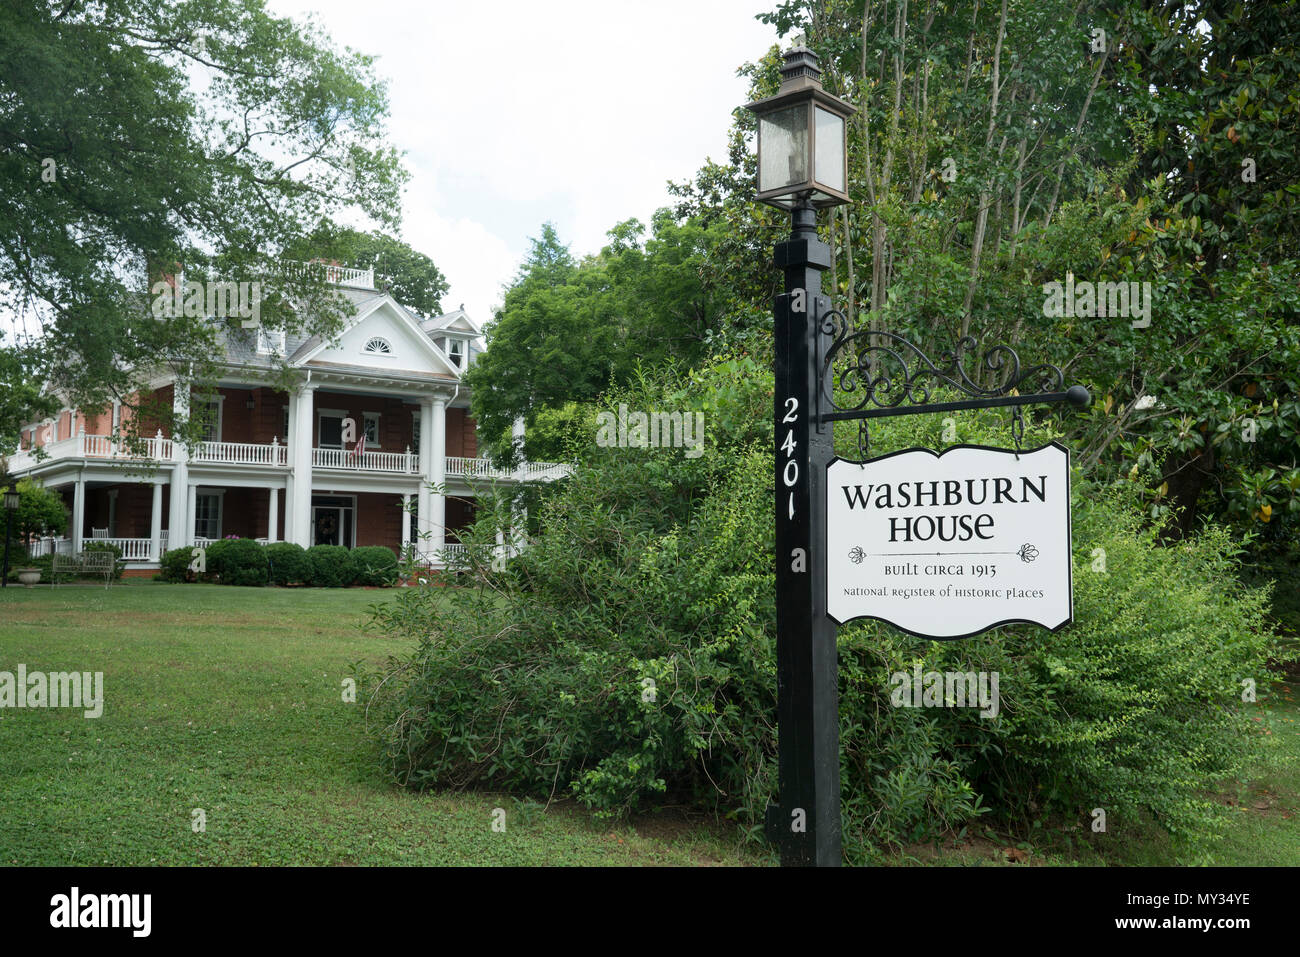 Washburn House di Bostic, North Carolina risale intorno al 1913 ed è sul Registro Nazionale dei Luoghi Storici. Foto Stock